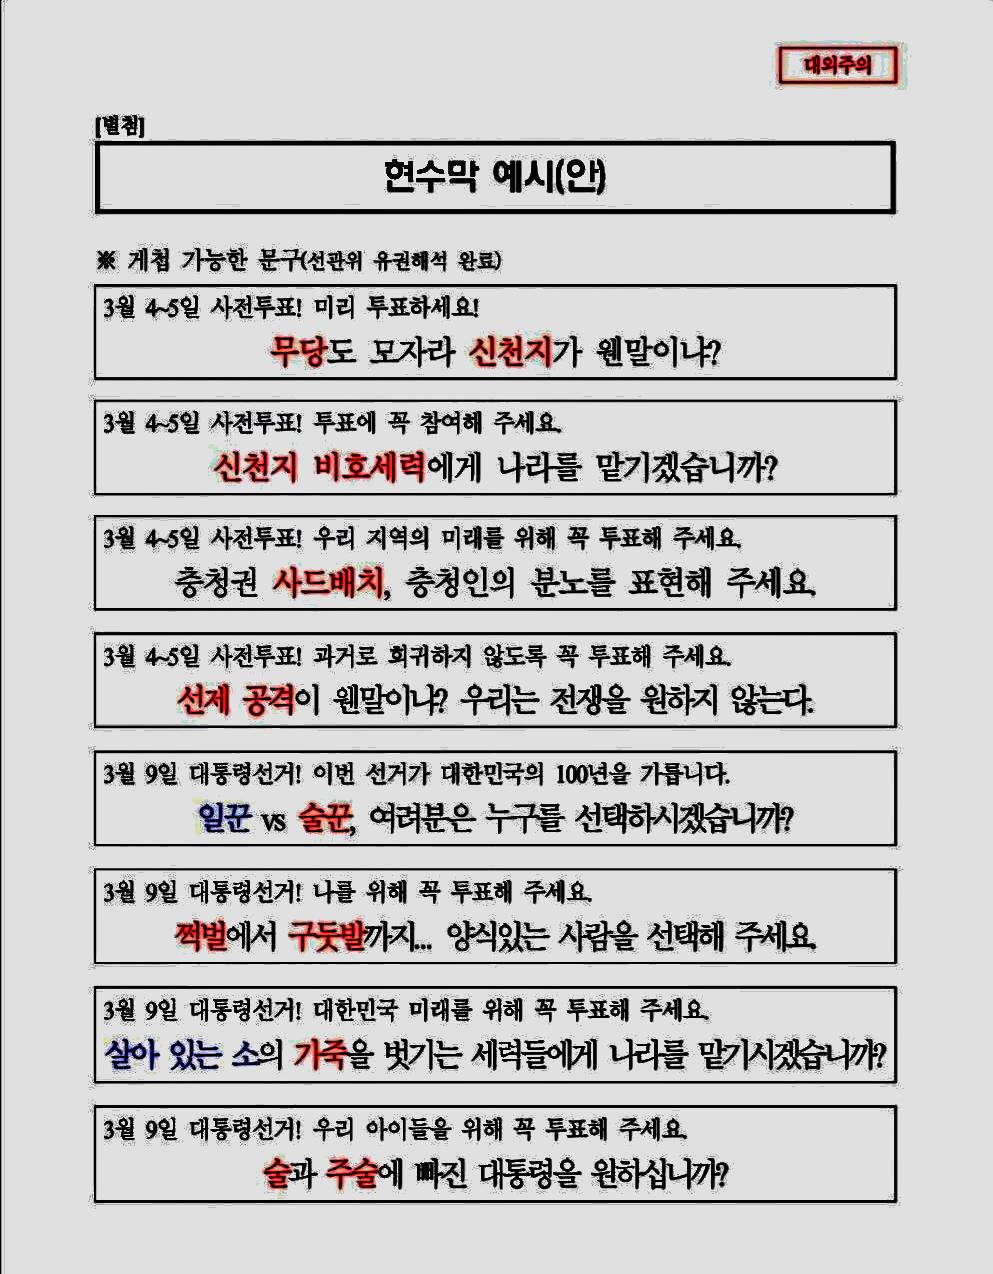 펜앤드마이크가 22일 입수한 정체불명의 '현수막 보고서' 문건. 2022.02.22(사진편집=조주형 기자)